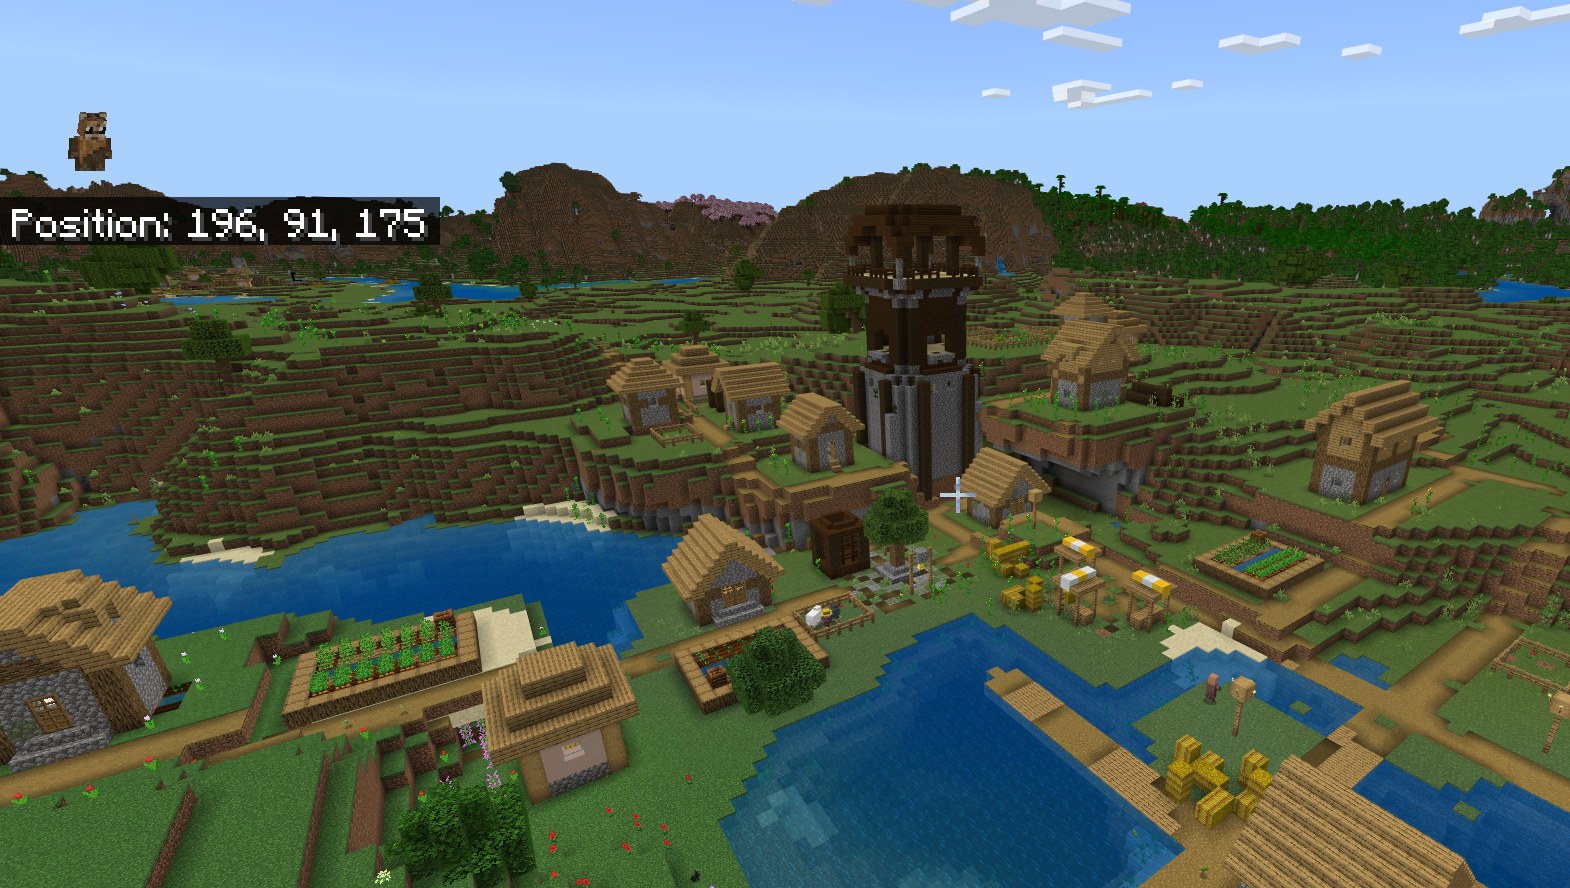 כפר Minecraft עם מאחז פילגר יושב באמצע זה